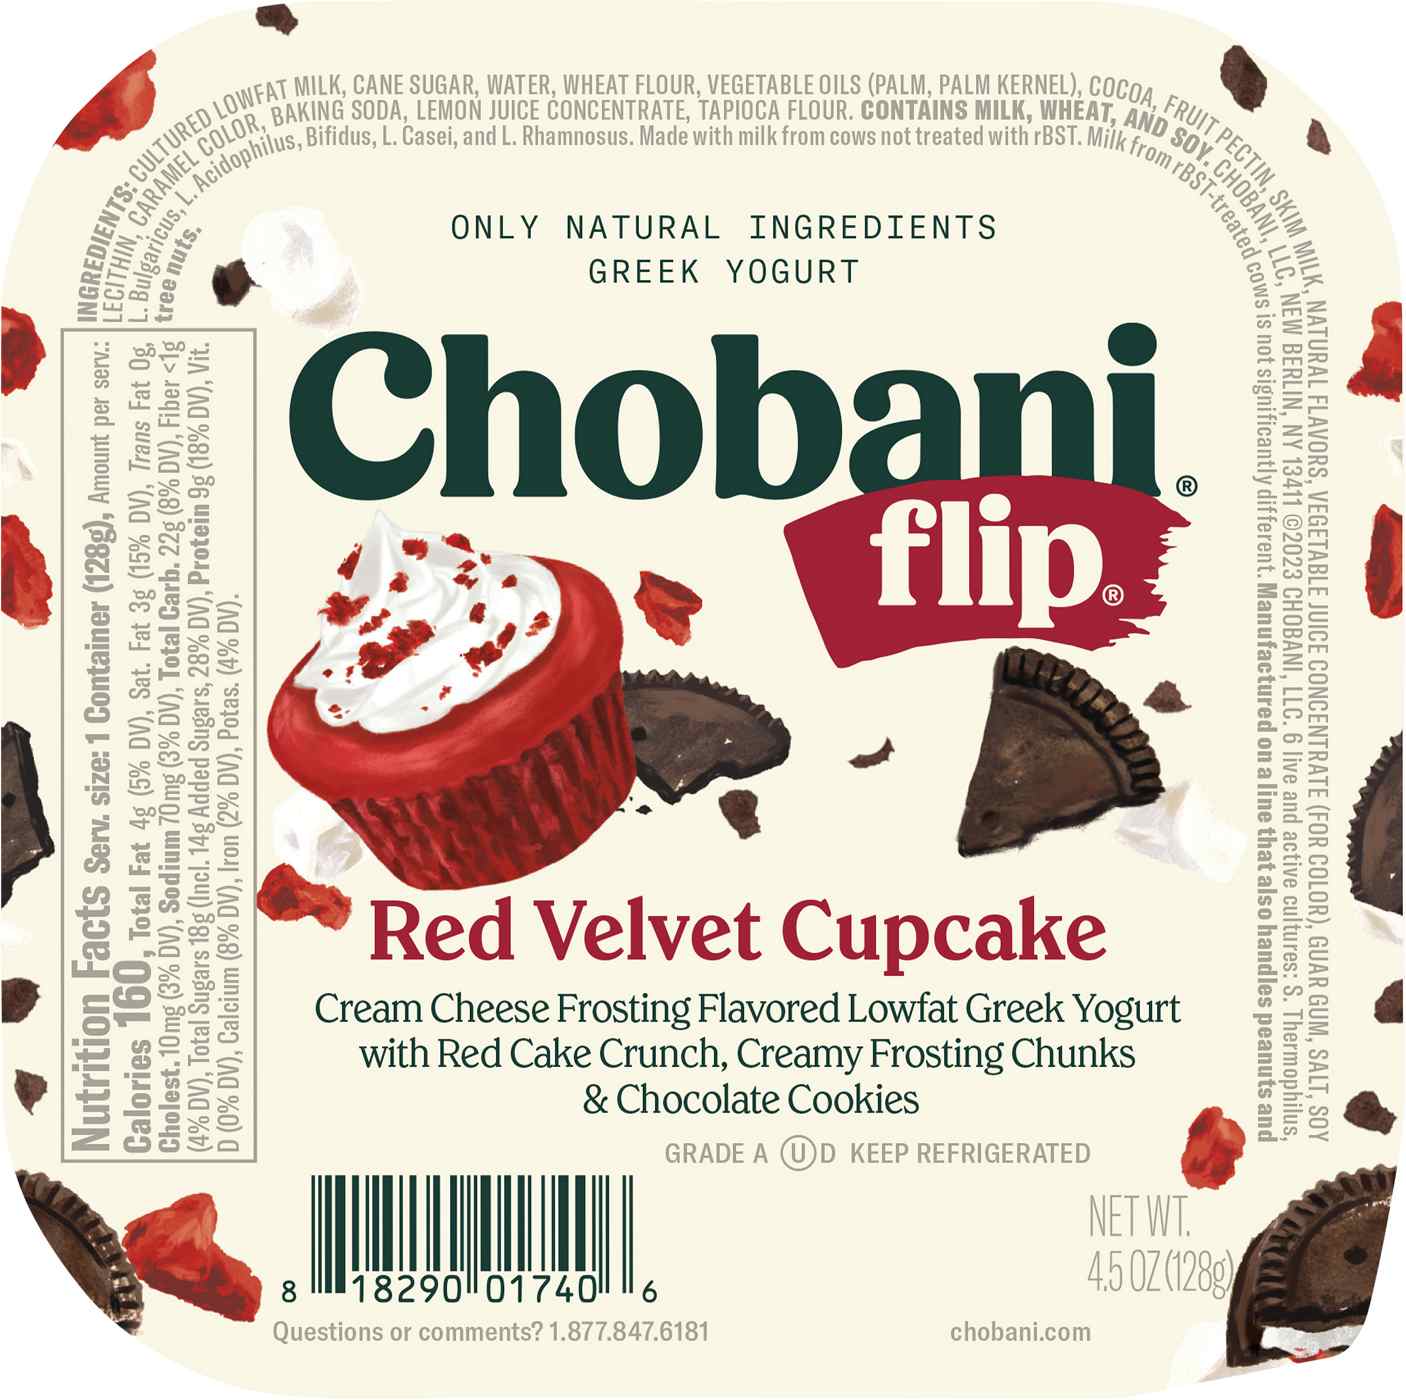 Chobani Flip Low-Fat Red Velvet Cupcake Greek Yogurt; image 2 of 2